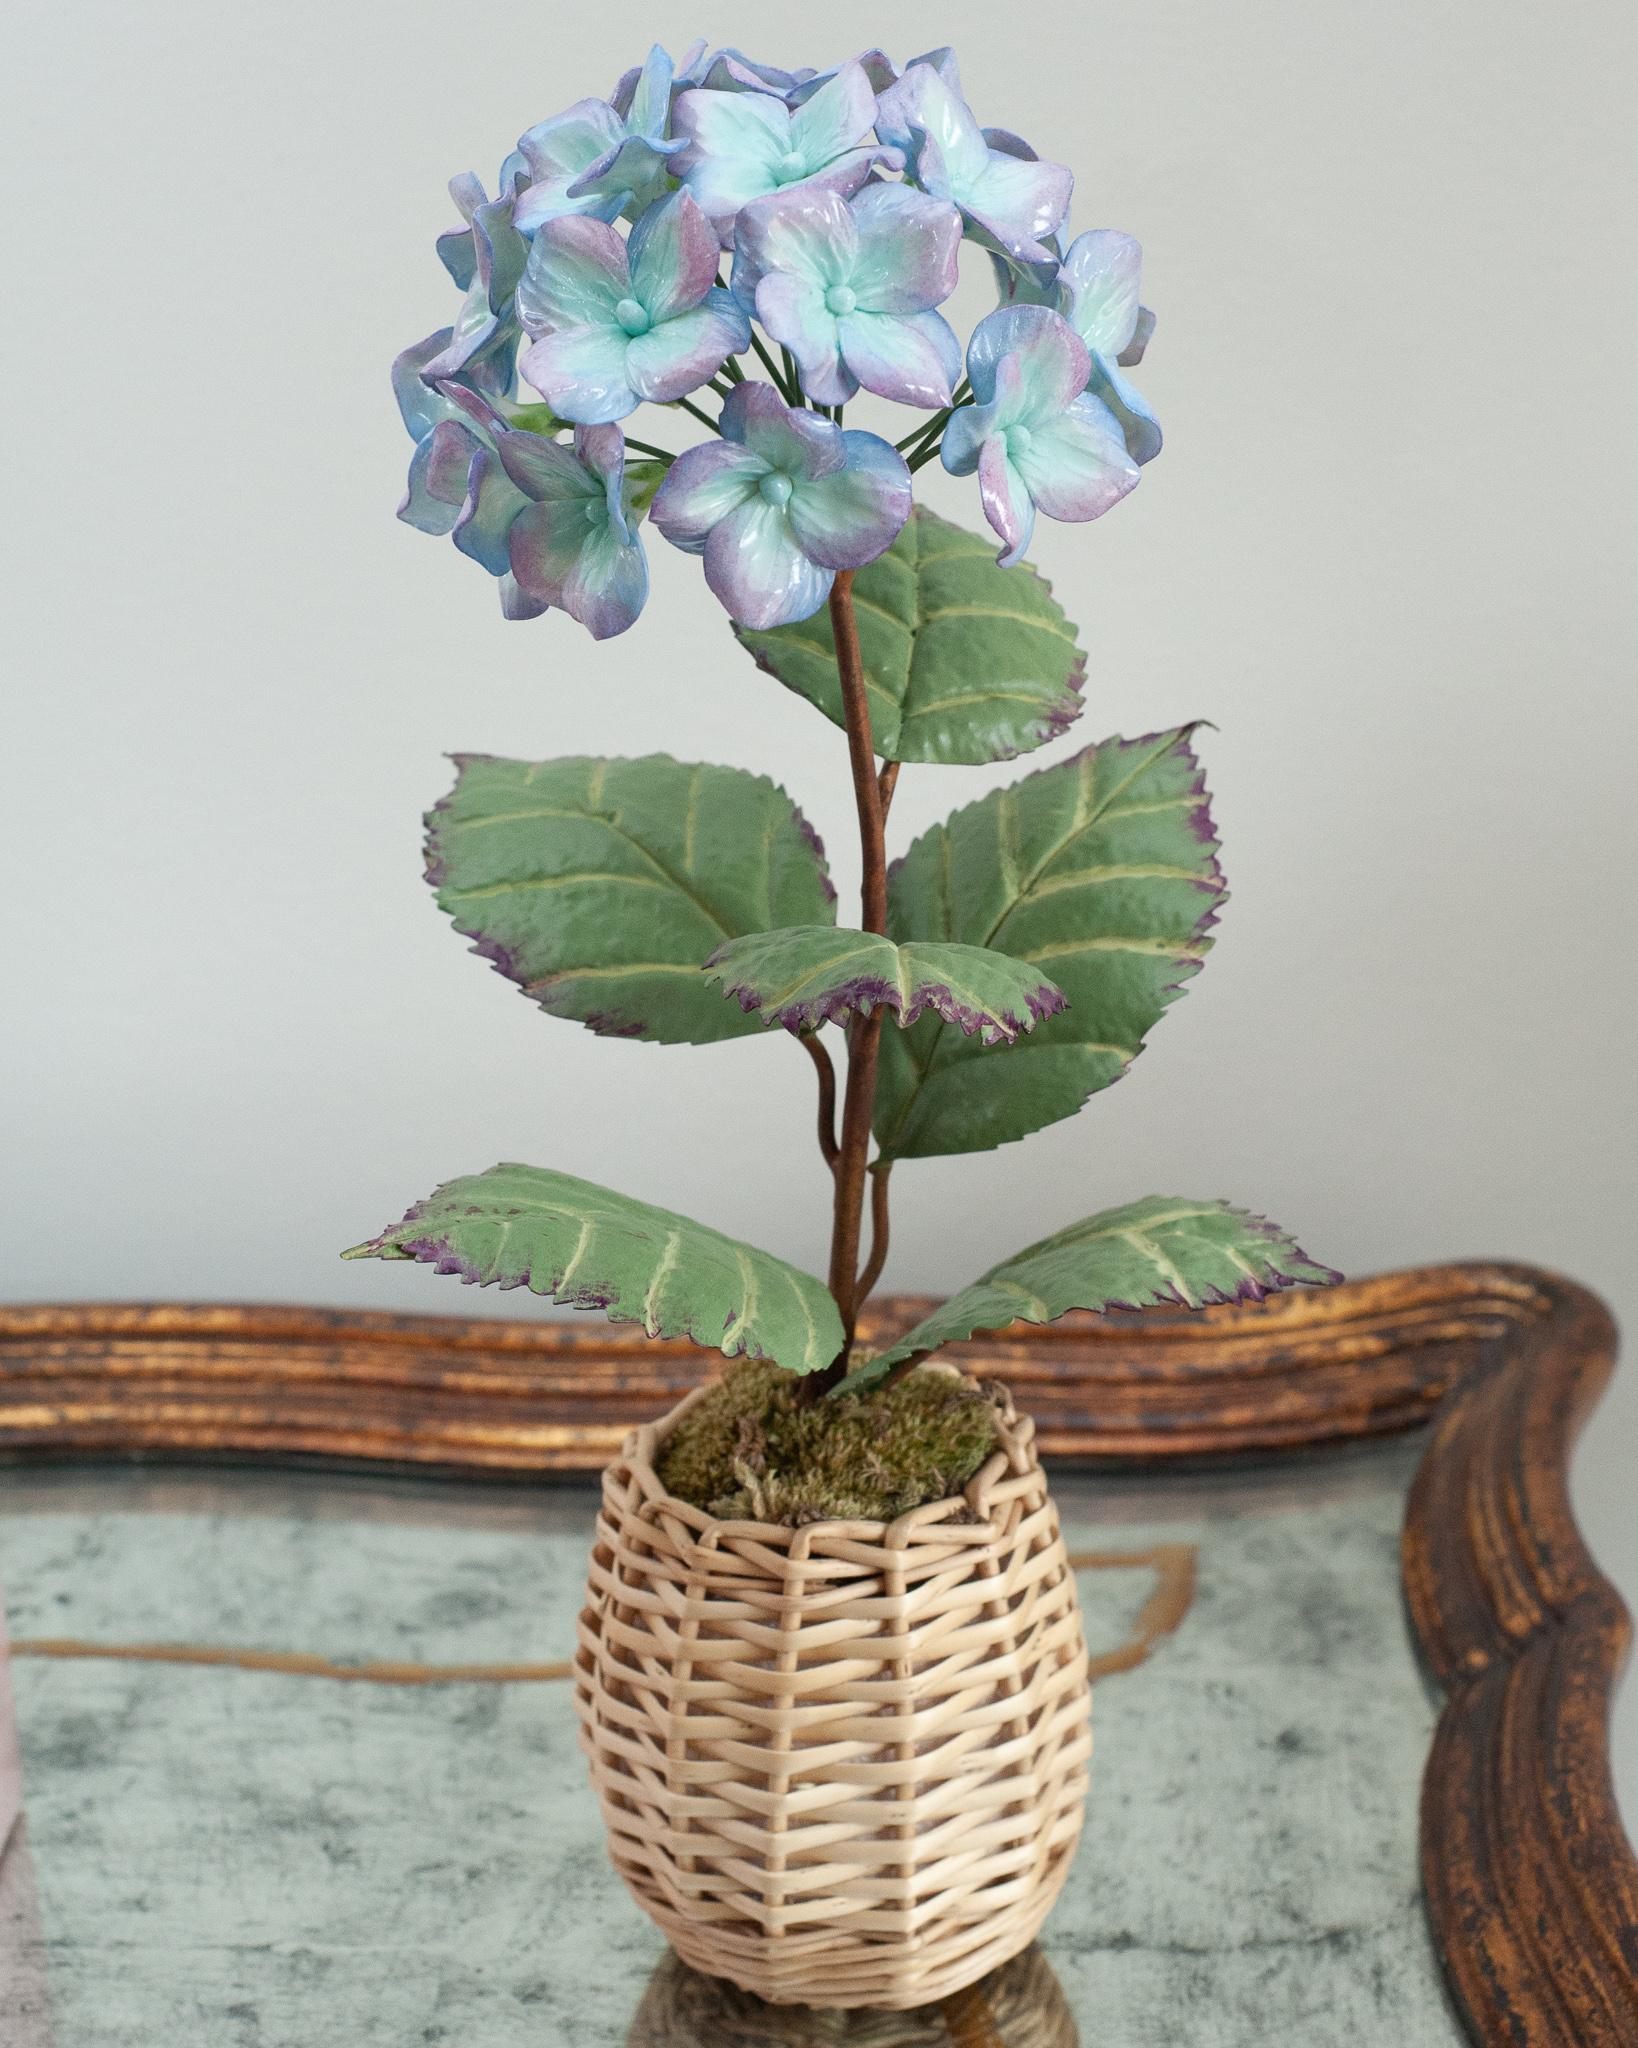 Verschönern Sie Ihren Tisch mit diesen zarten Porzellanblumen des französischen Künstlers Samuel Mazy. Diese lilafarbene und blaue Hortensie ist aus glasiertem Porzellan handgefertigt, mit handbemalten Kupferblättern und -stängeln, und steht in